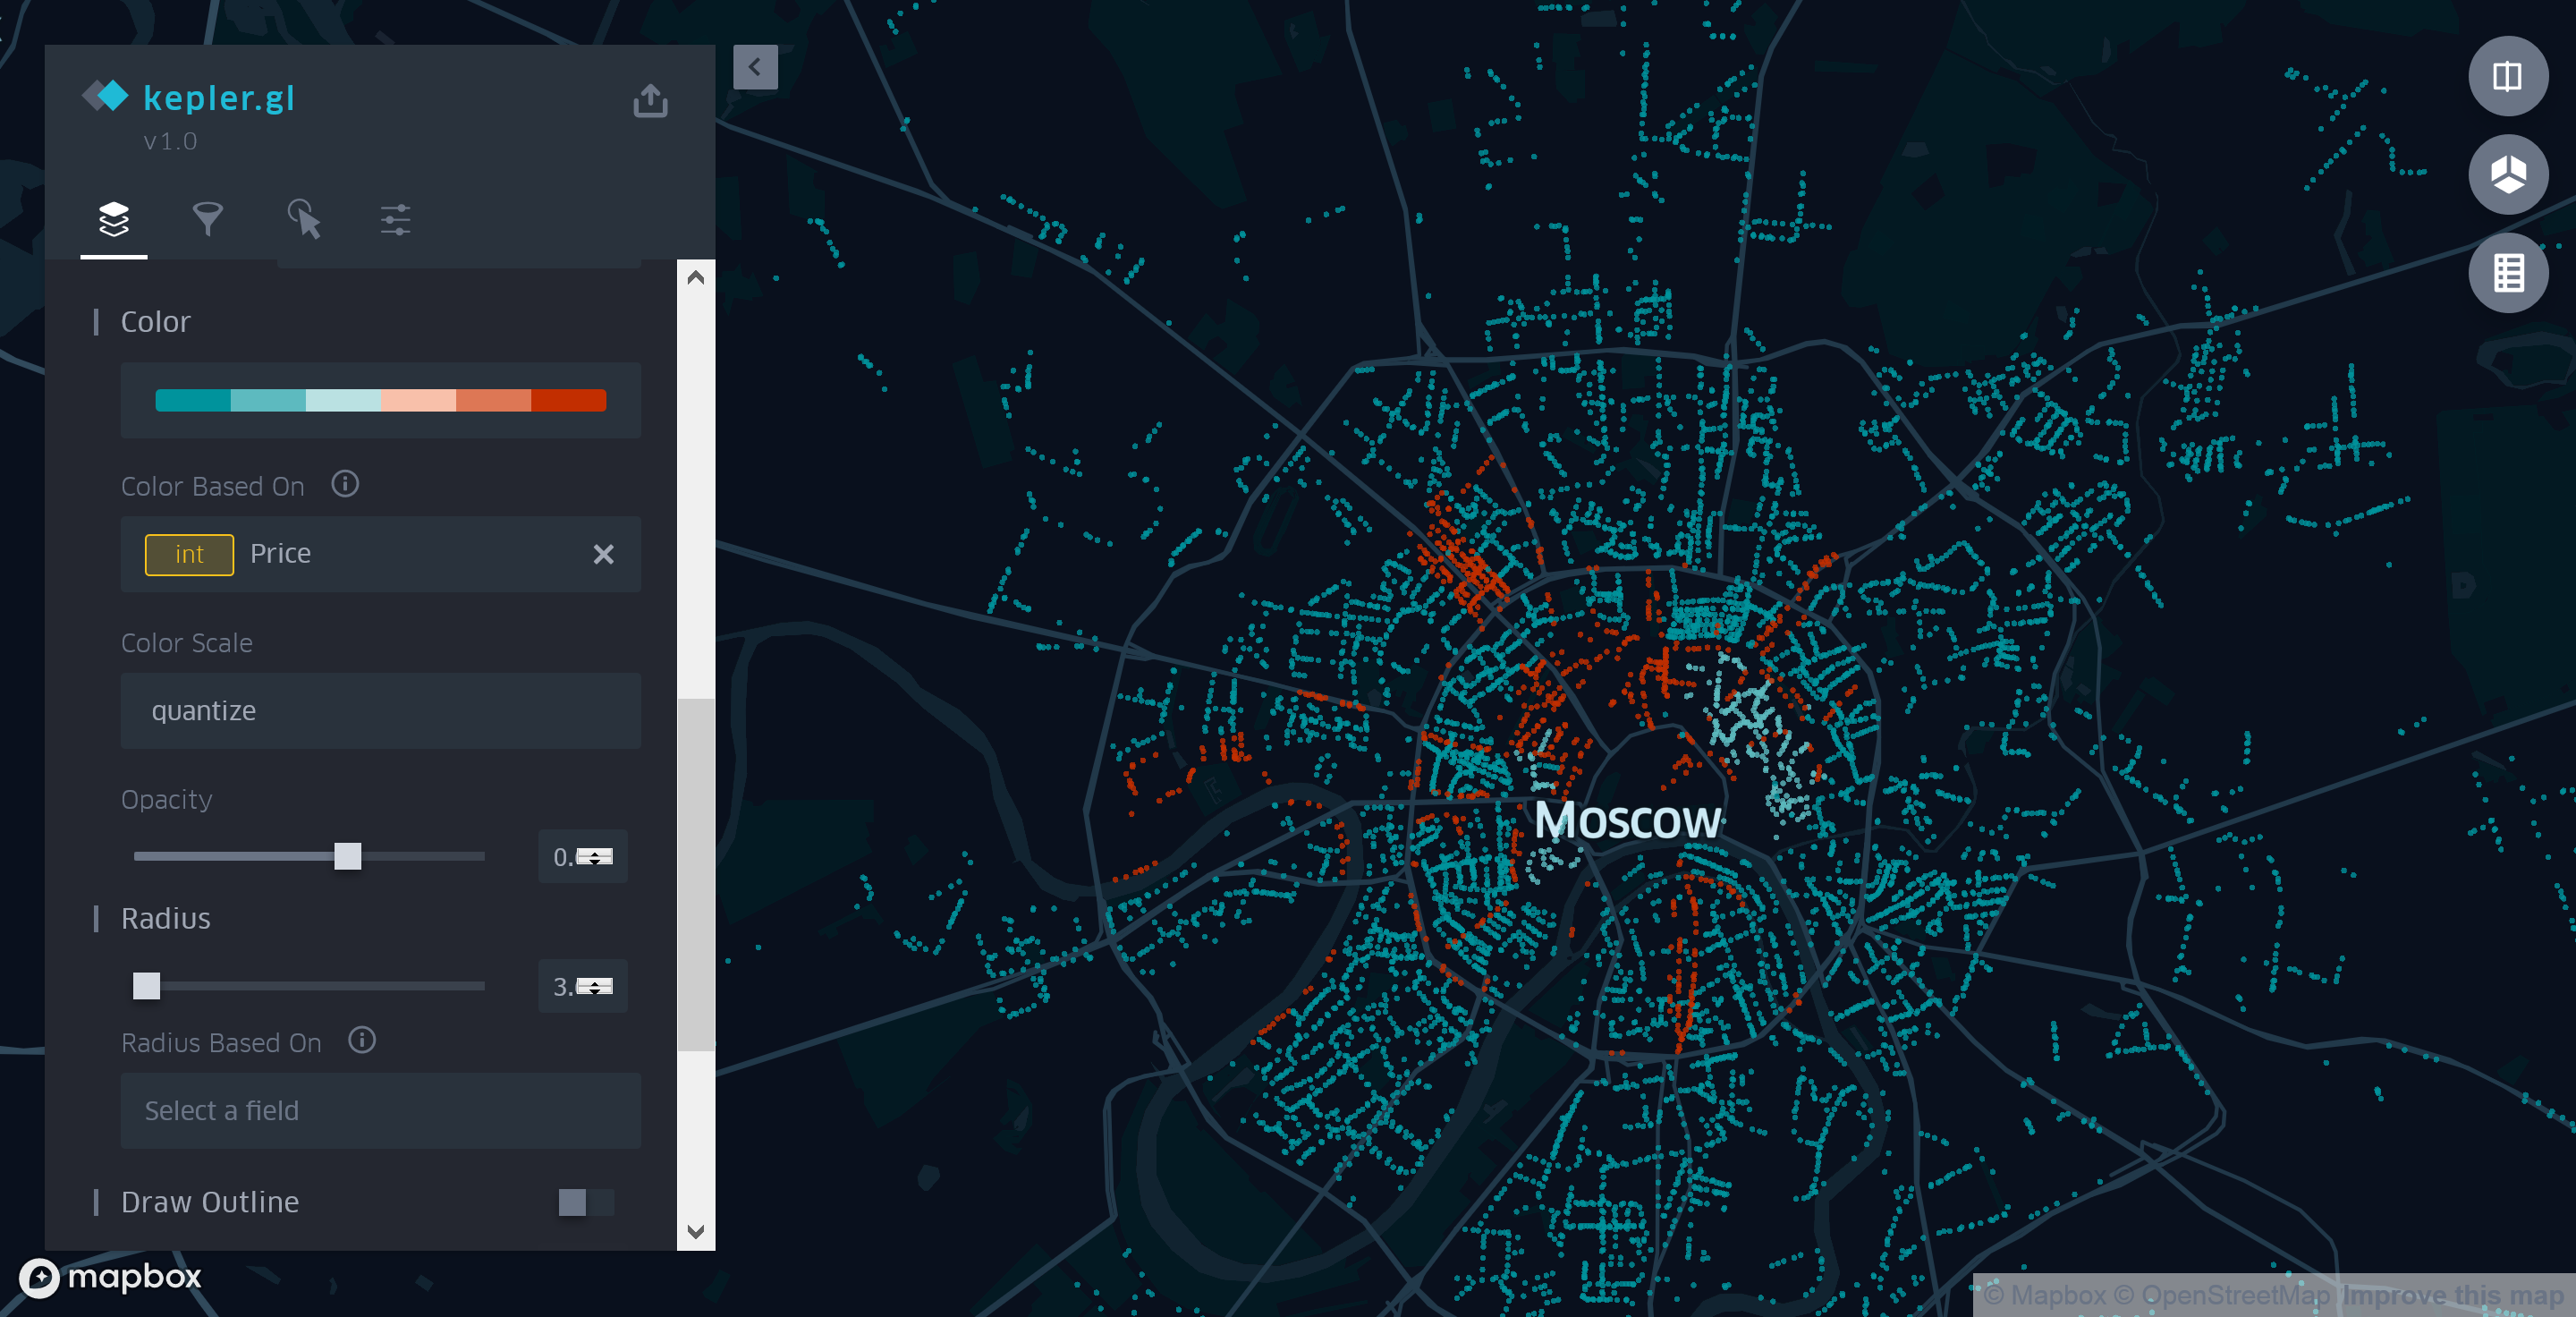 Как создать карту московских парковок с помощью Kepler.gl - 5